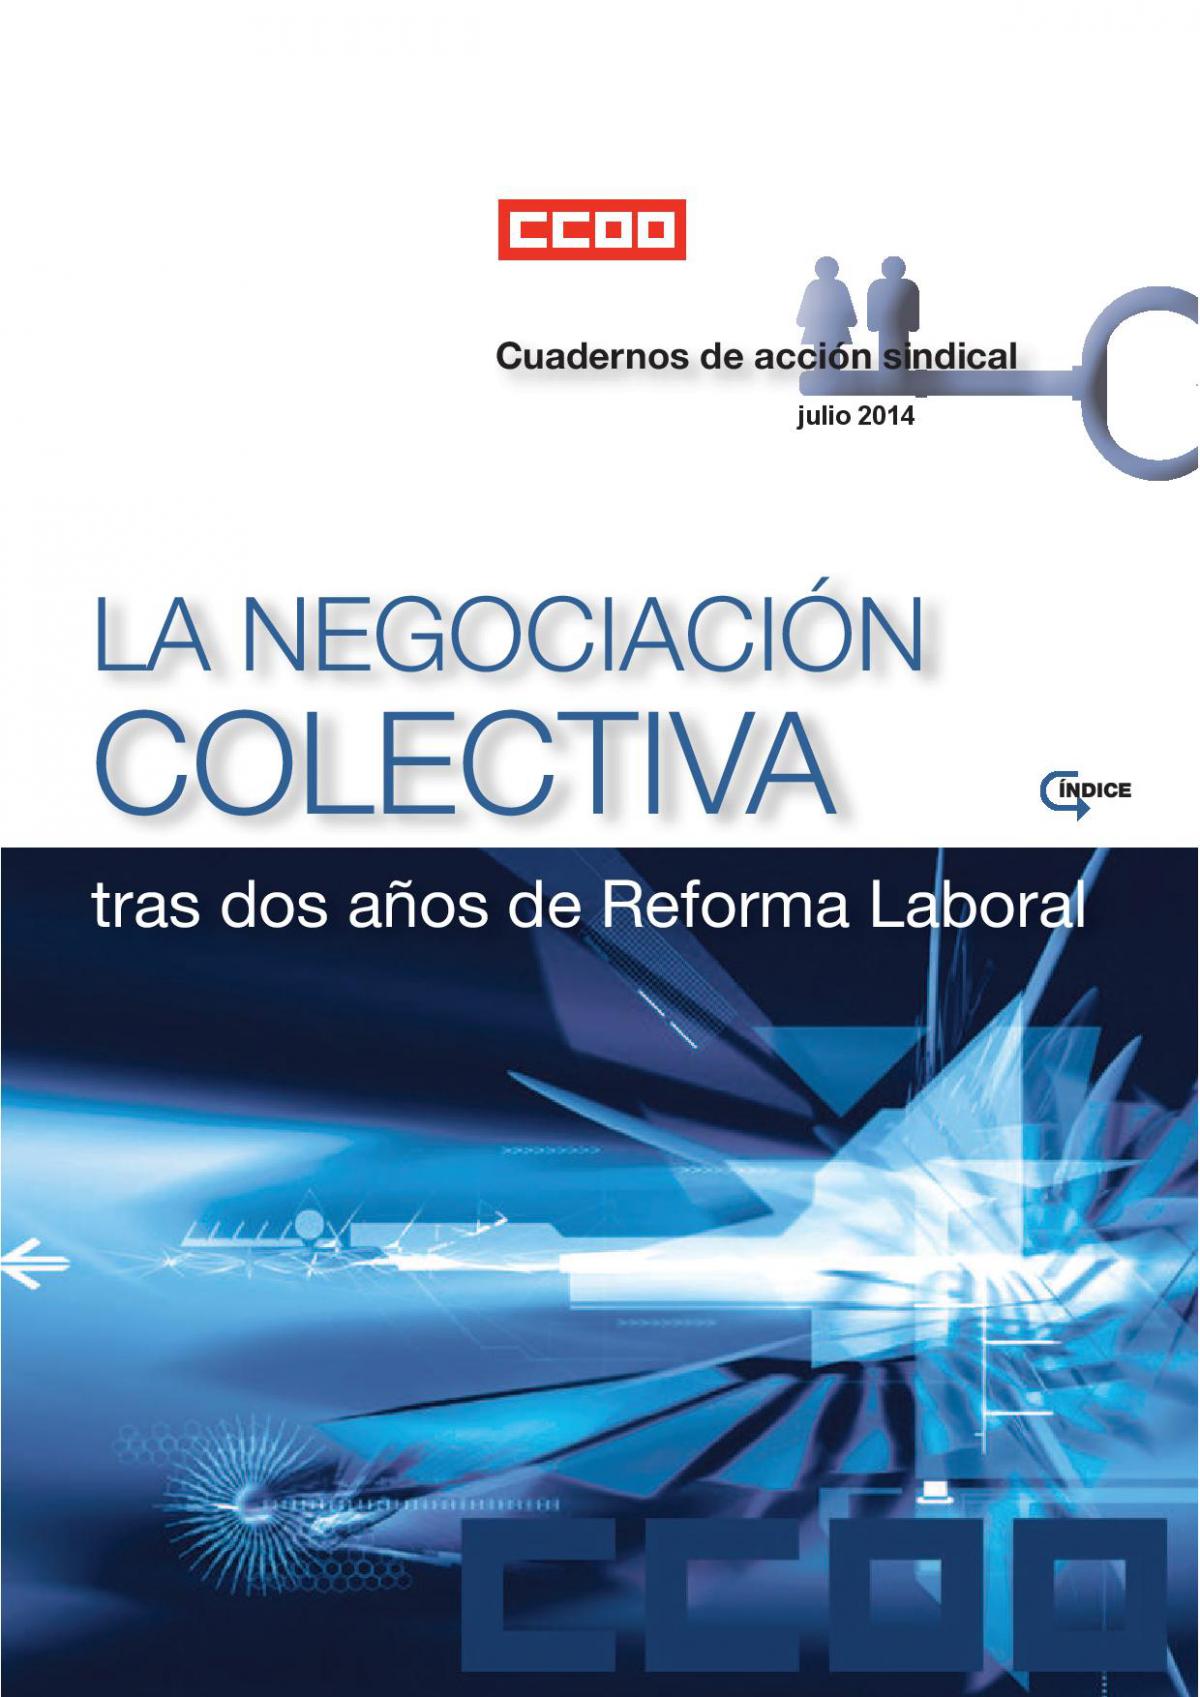 Cuaderno de Información Sindical sobre Negociación Colectiva tras dos años de reforma laboral 